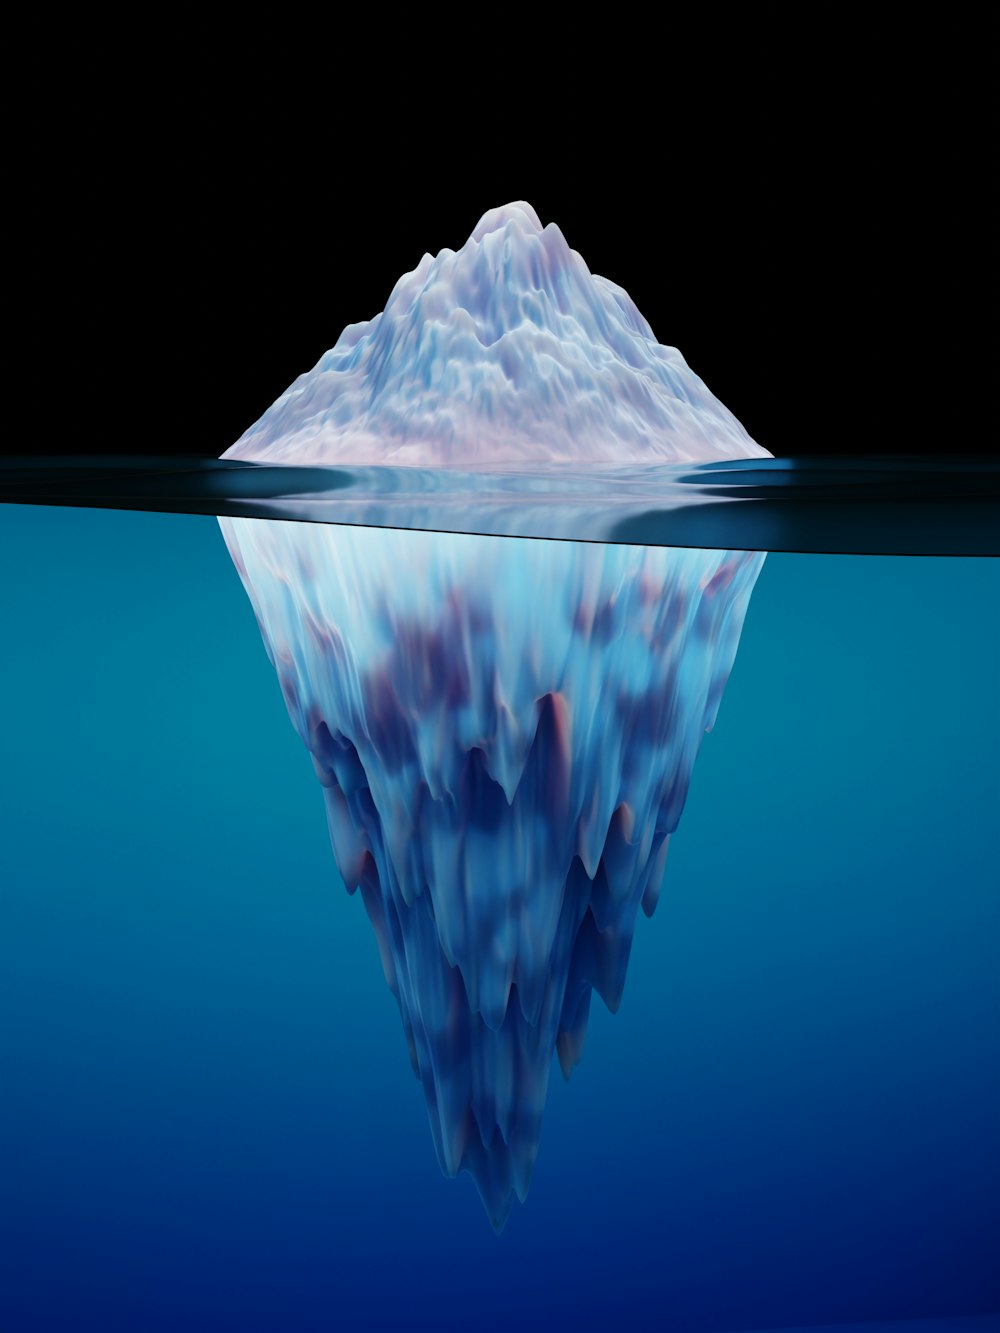 Un grande iceberg che galleggia nell'acqua